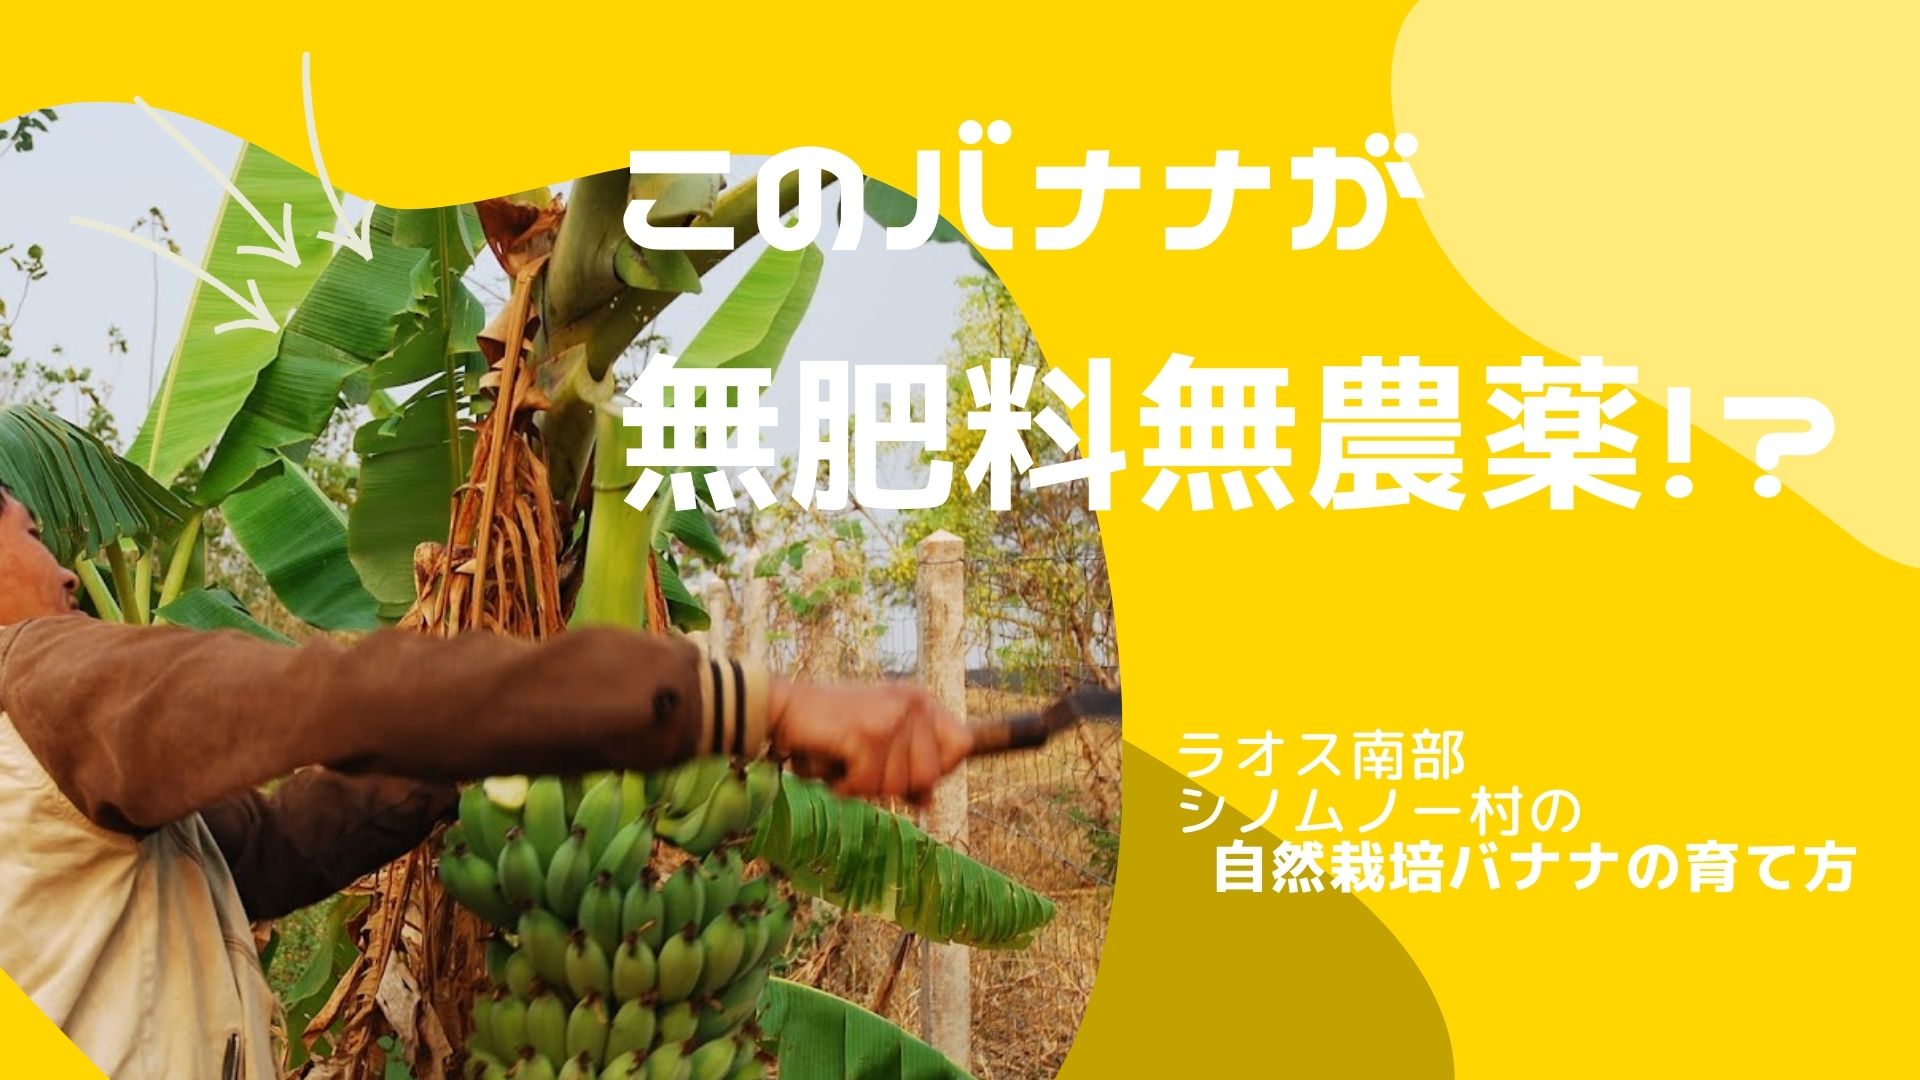 シノムノー村の自然栽培バナナの植え方